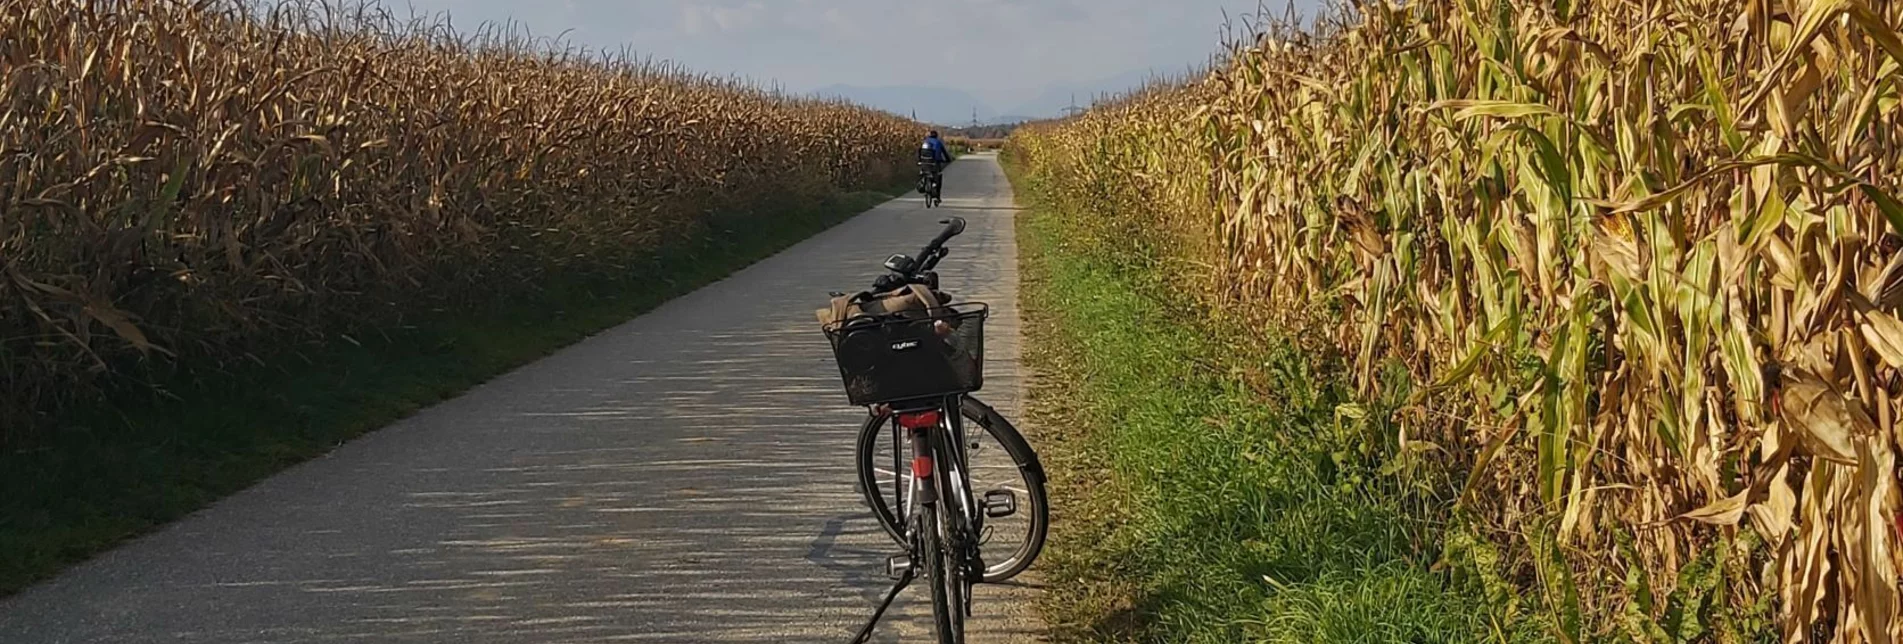 Bike Riding Sun tour, Gleisdorf - Touren-Impression #1 | © Oststeiermark Tourismus